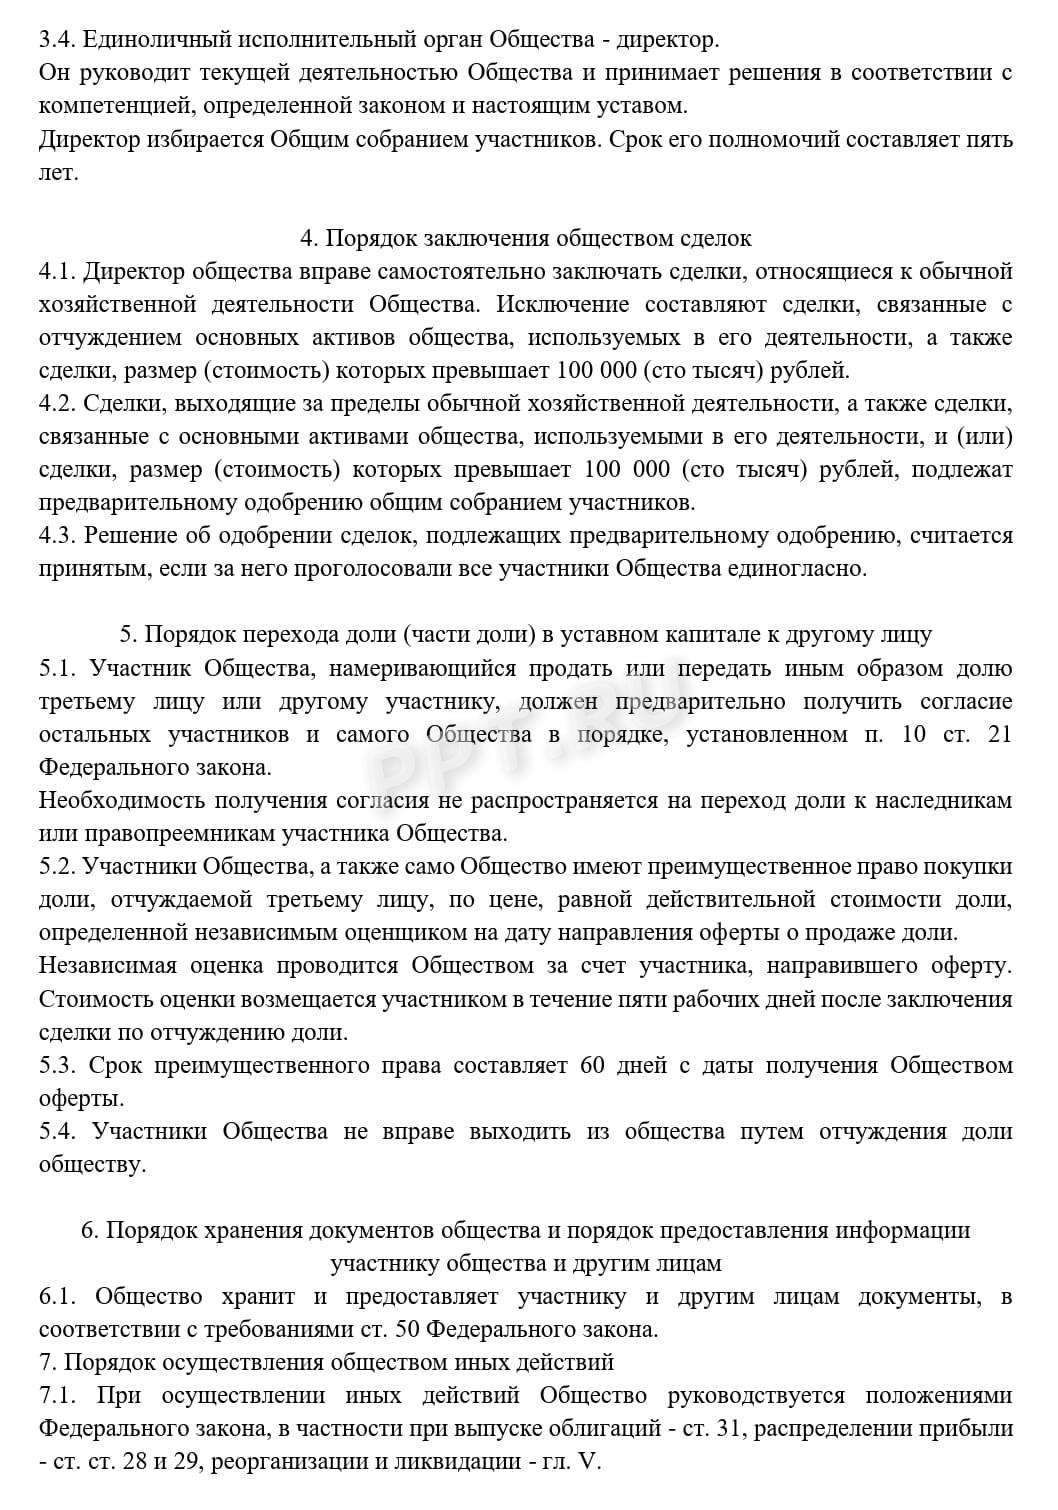 Устав ООО с несколькими учредителями, стр. 2